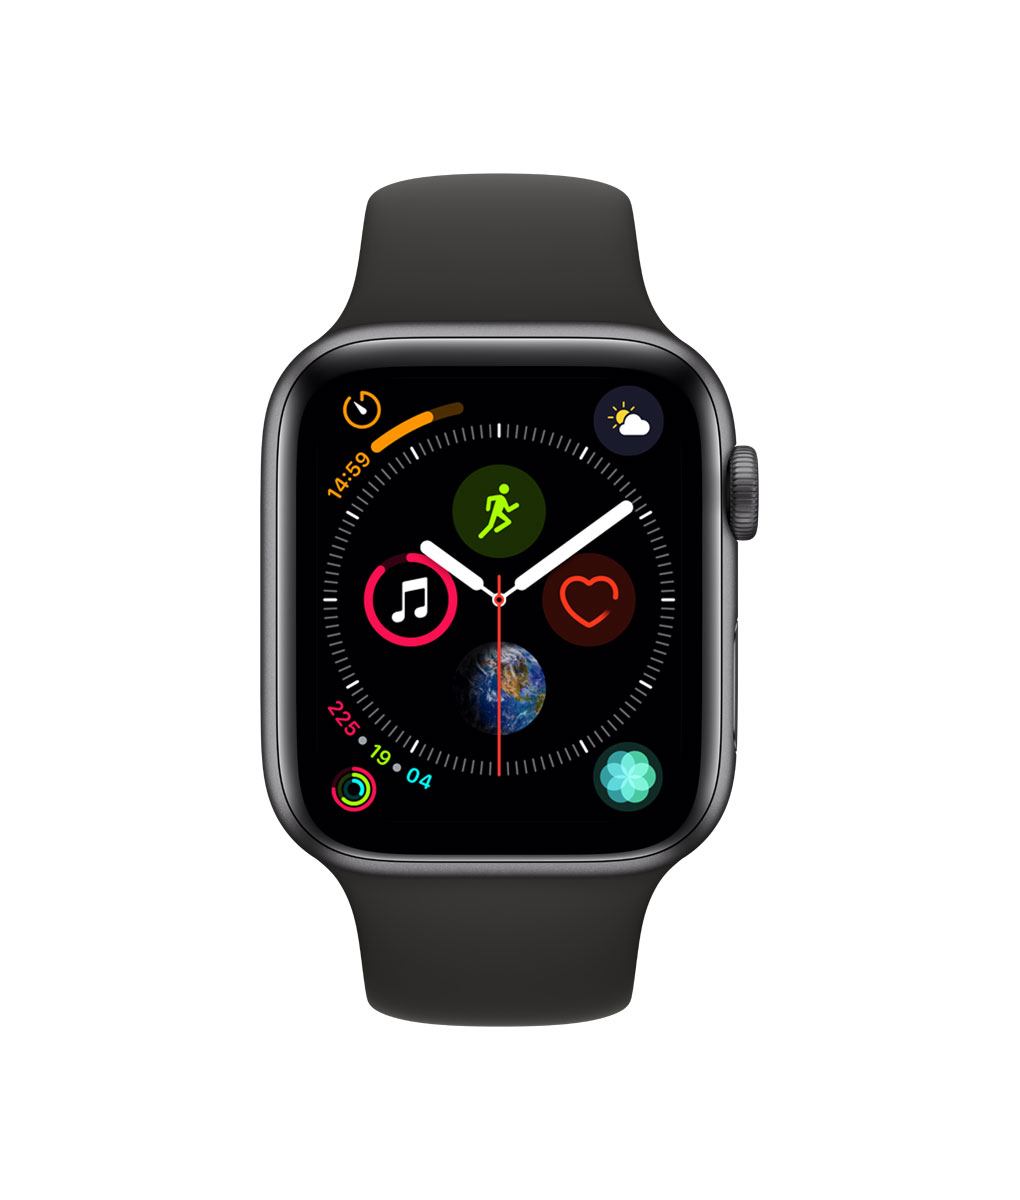 Apple Watch Series 4 Gps Black on Sale, 53% OFF | www 